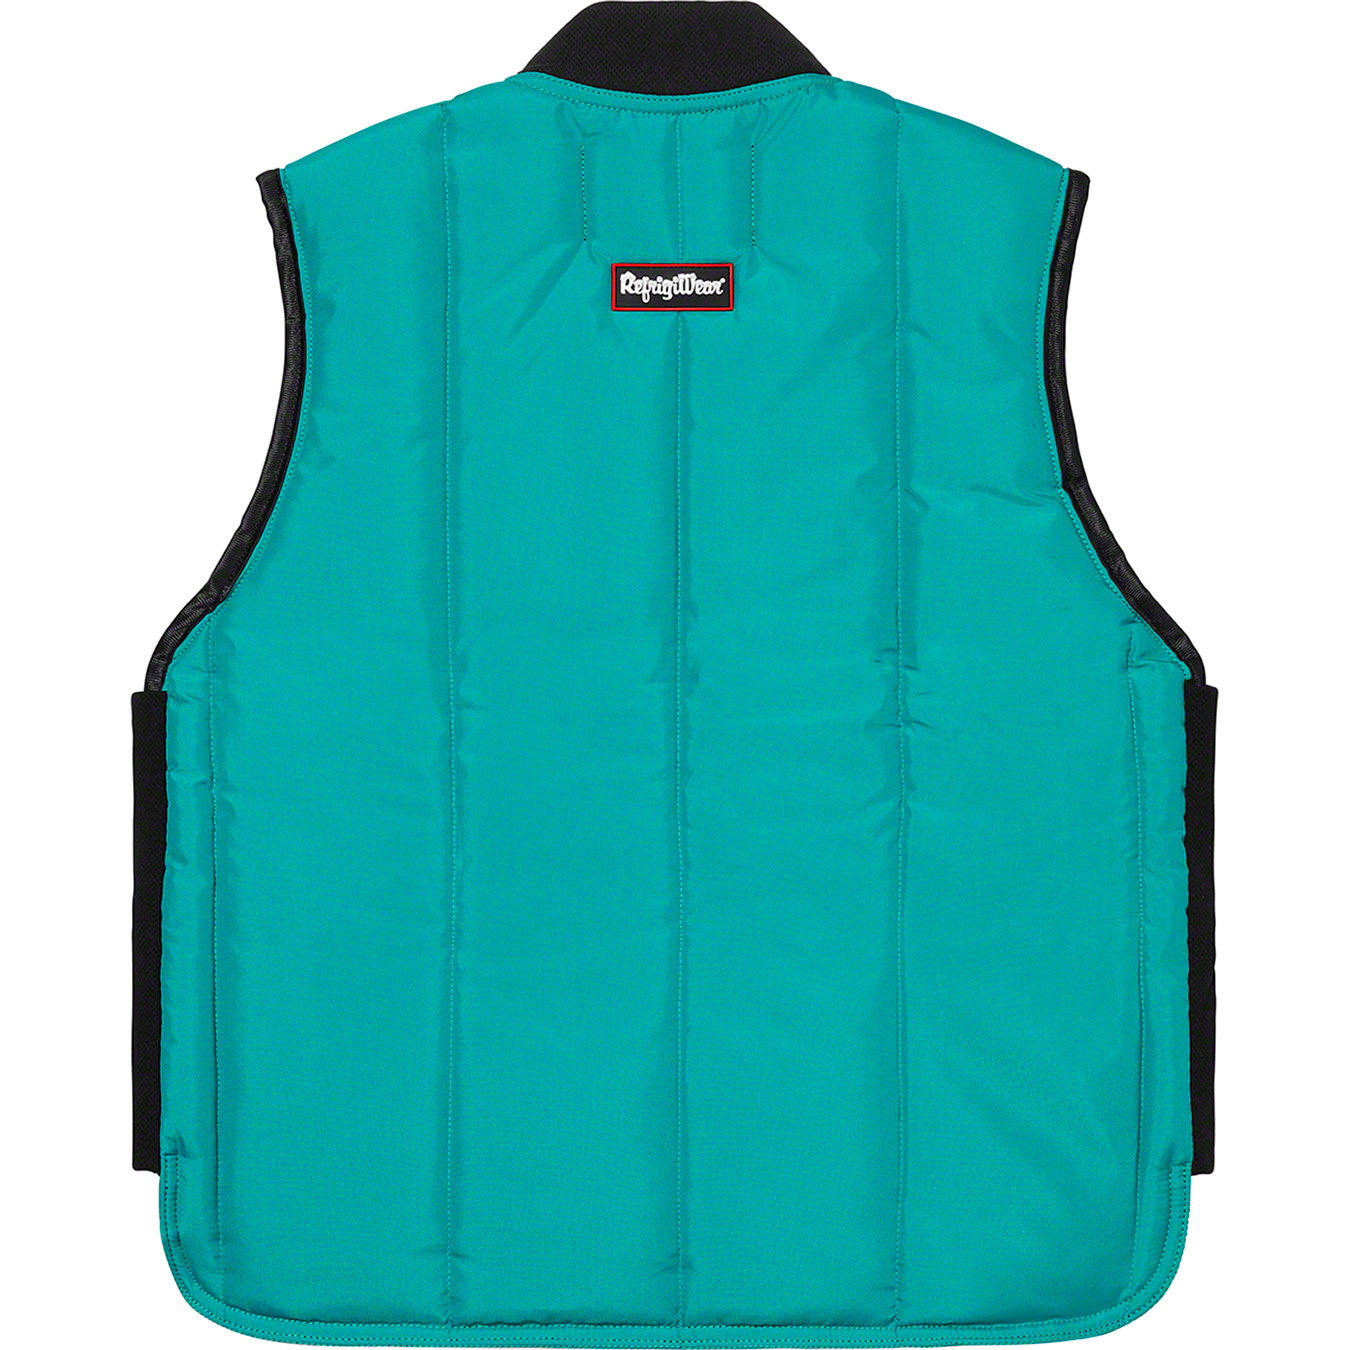 Supreme®/RefrigiWear® Insulated Iron-Tuff Vest | Supreme 20fw